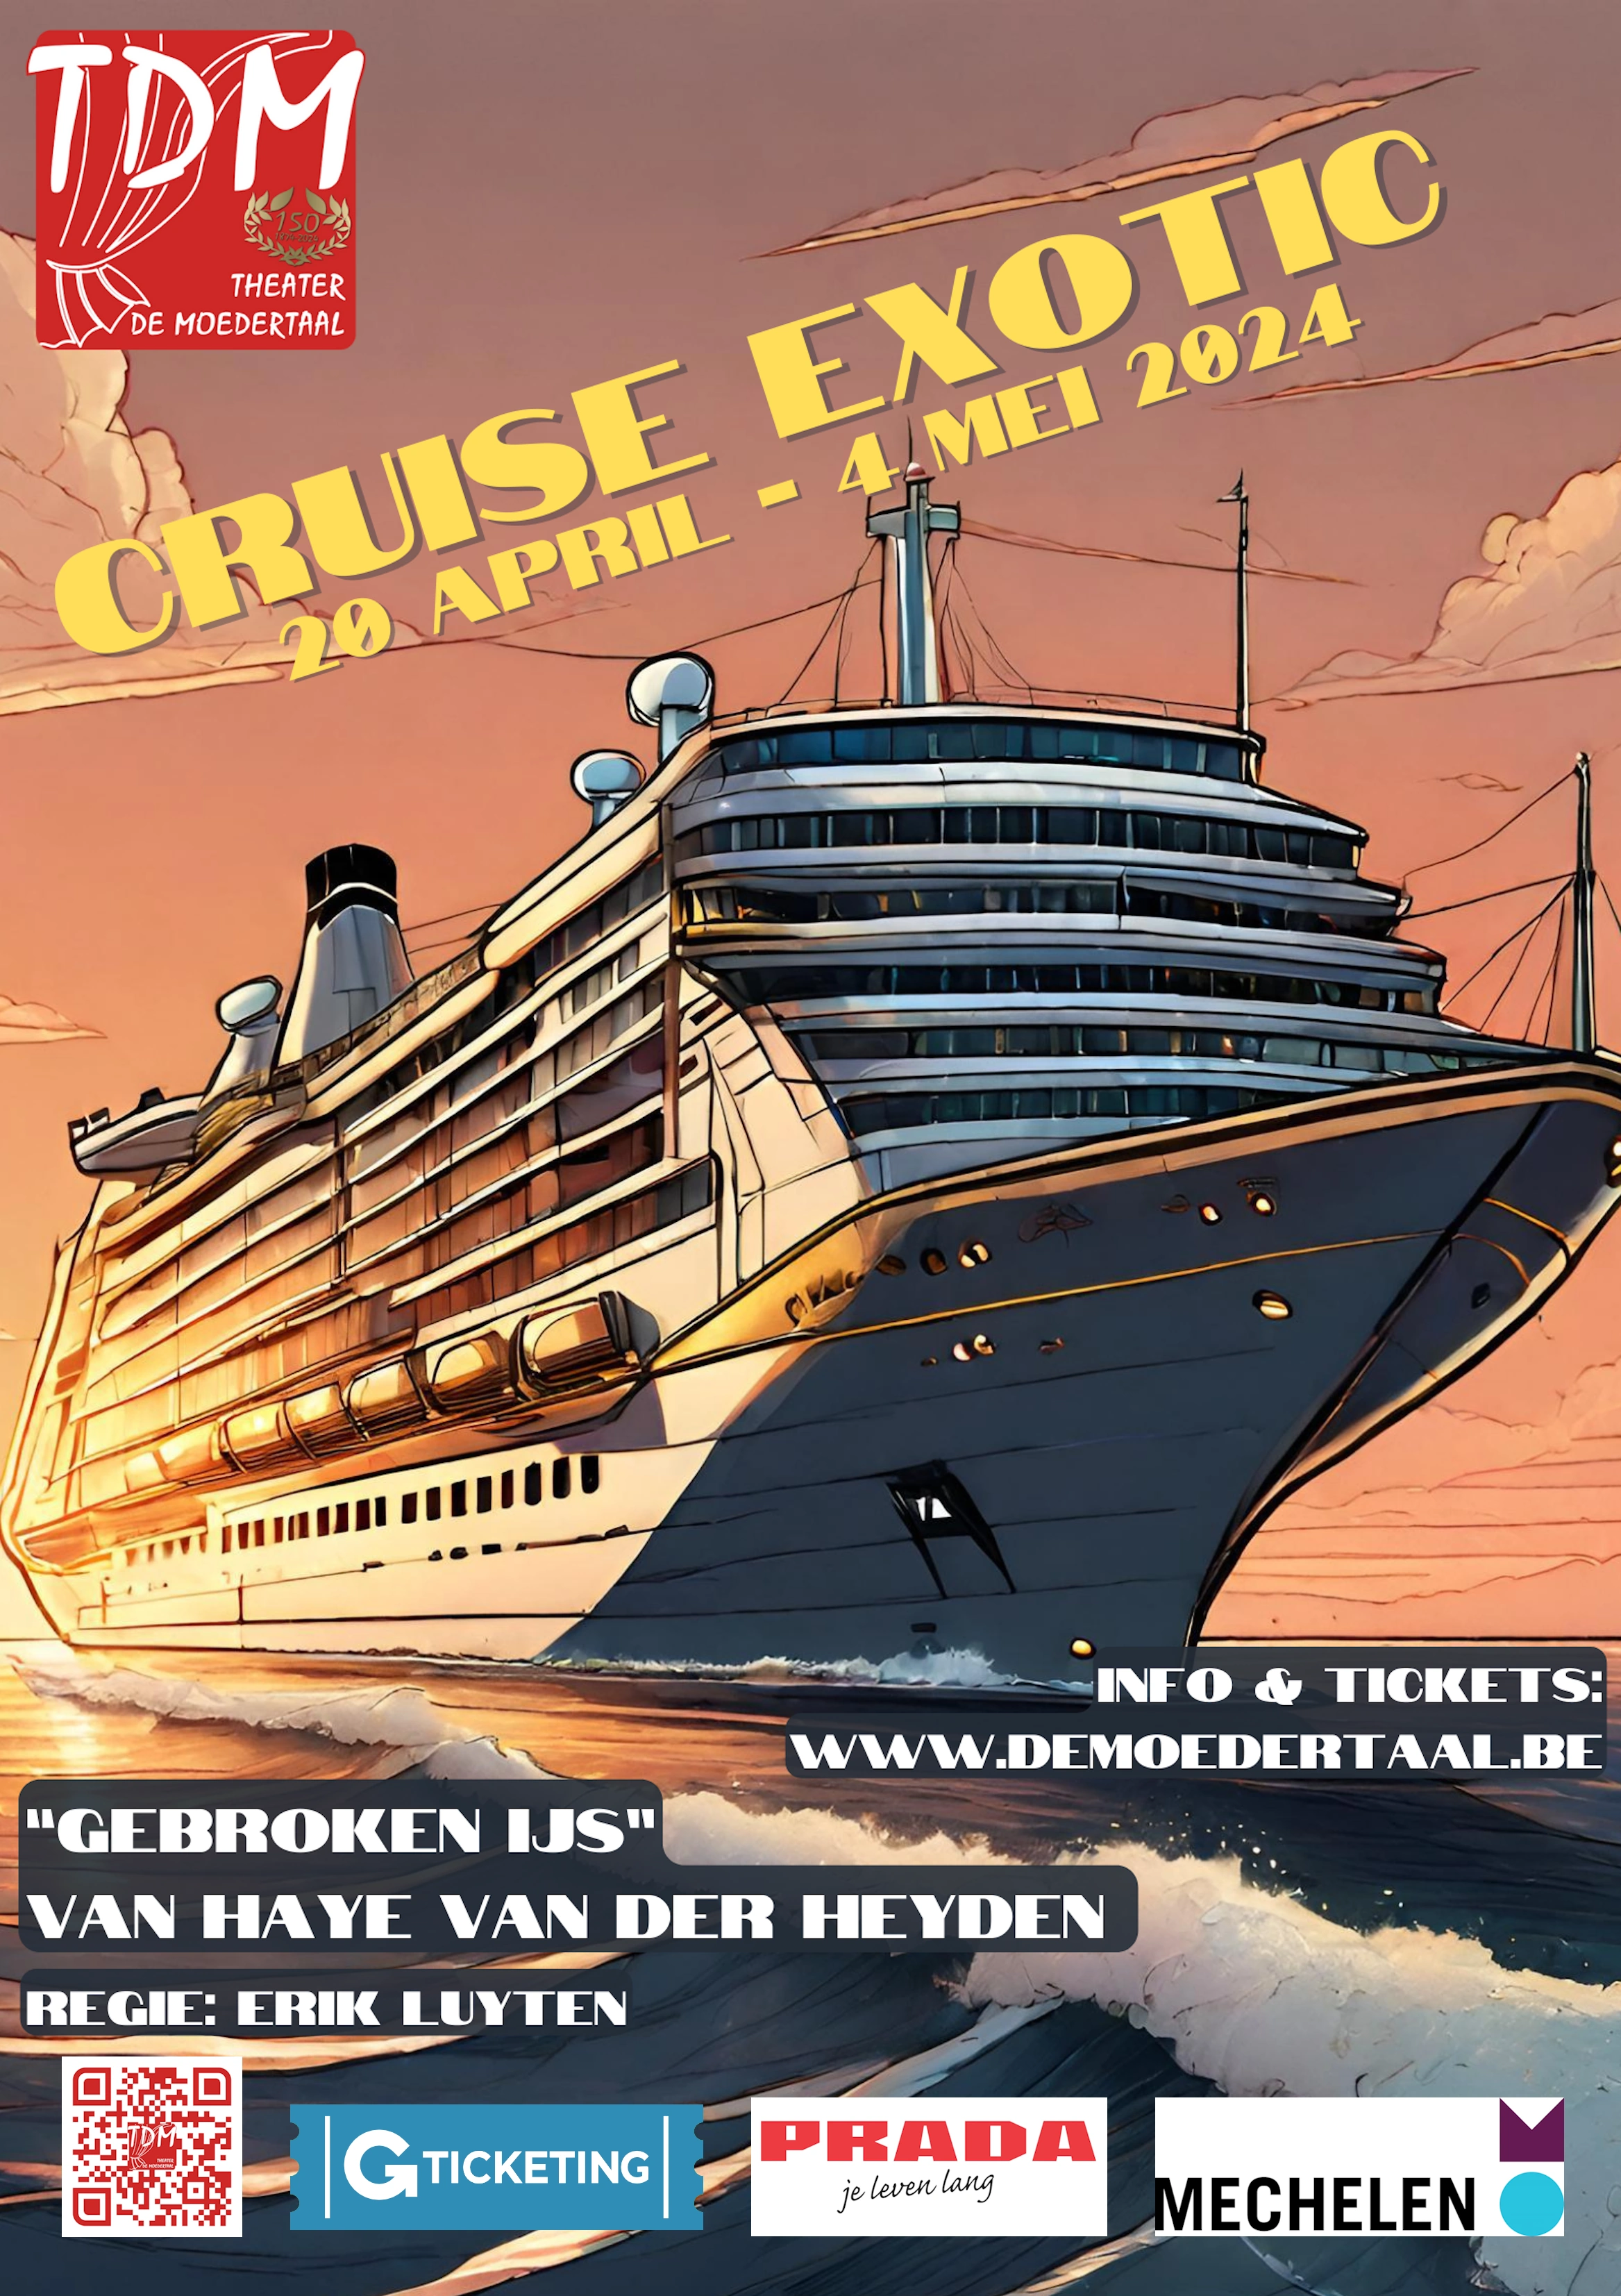 Cruise Exotic